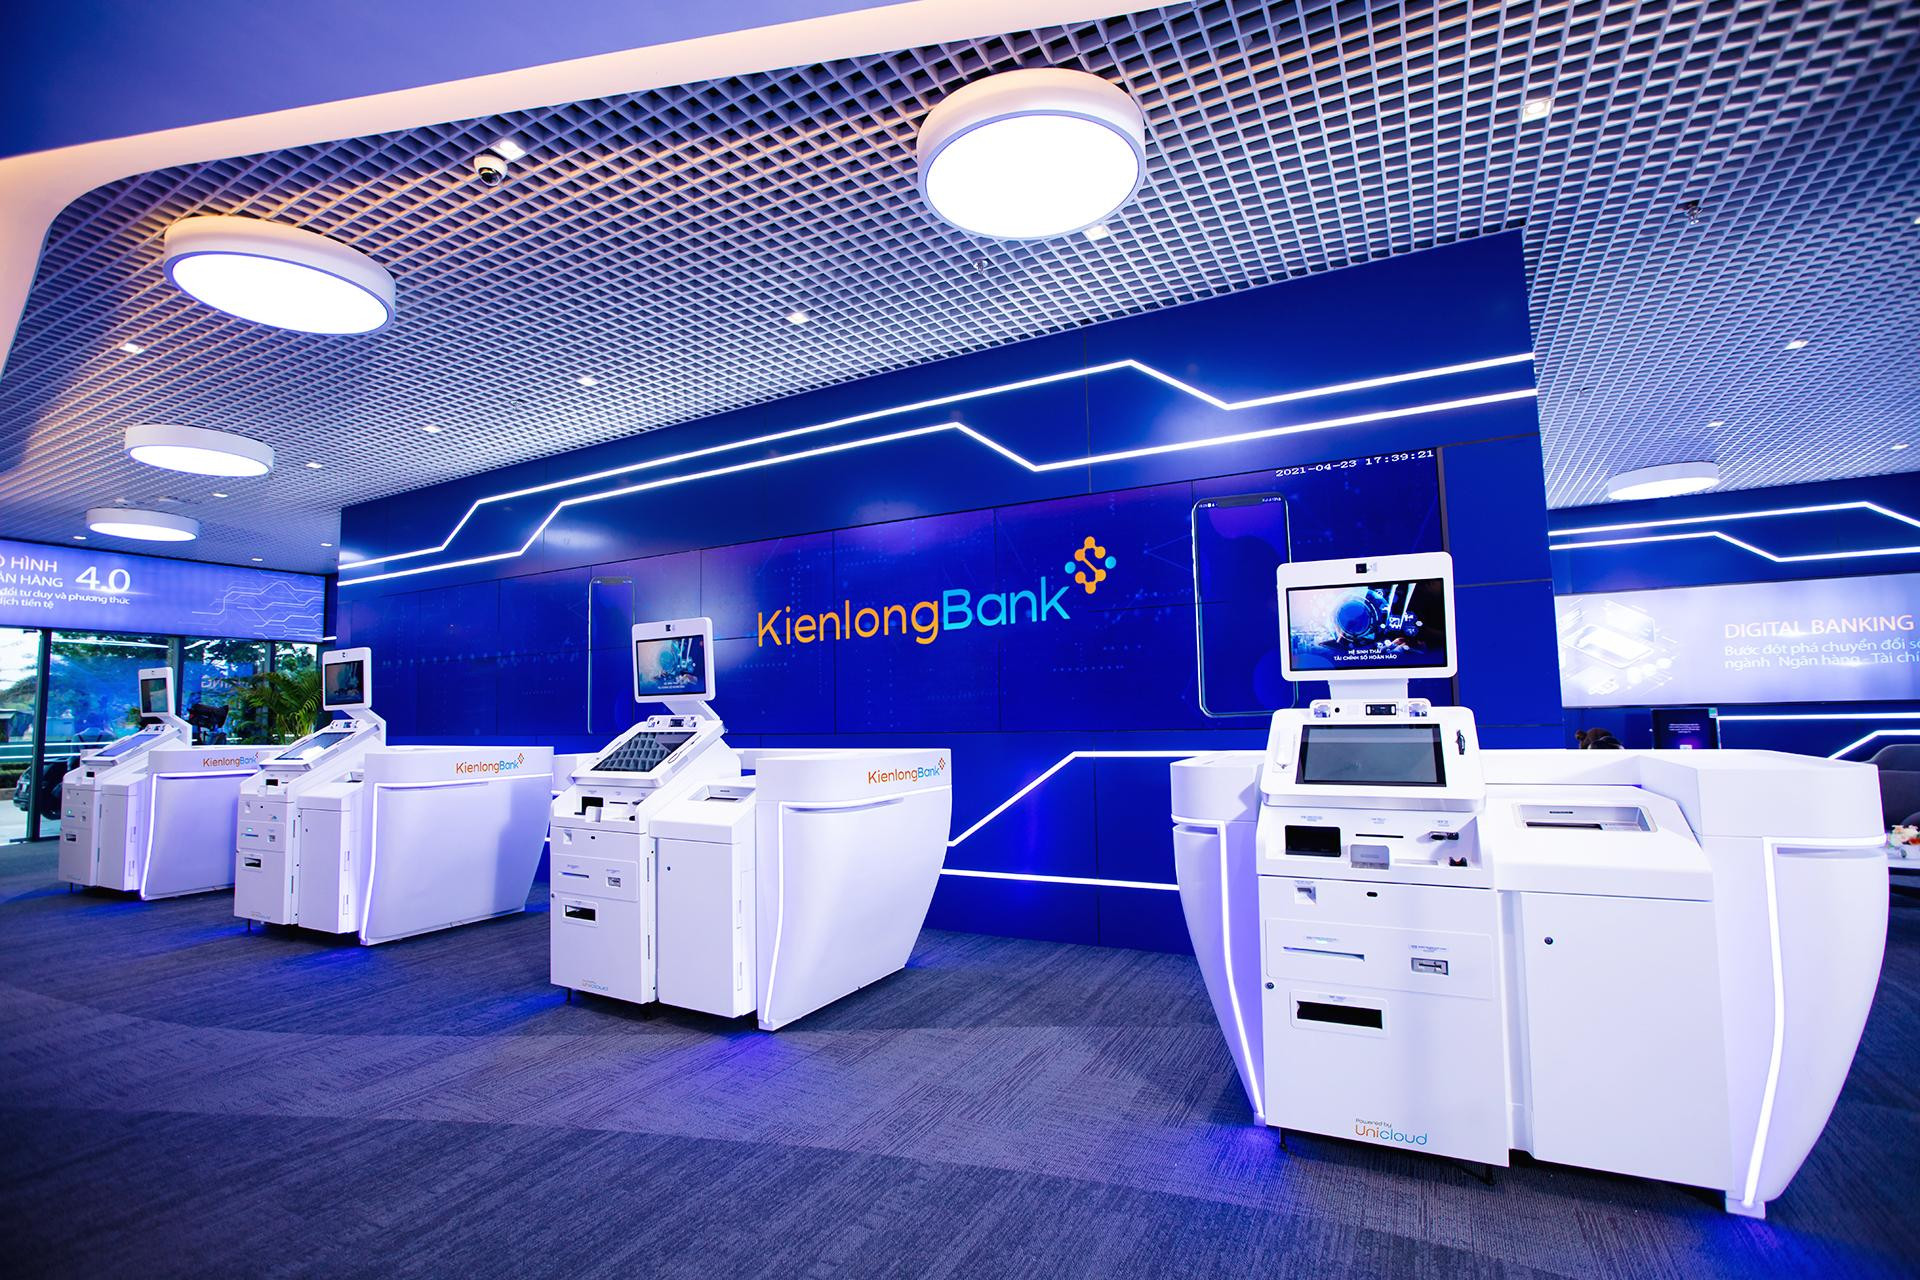 Hệ thống máy STM do KienlongBank và Unicloud Group hợp tác phát triển sẽ tham gia triển lãm “Ngày chuyển đổi số” ngành Ngân hàng năm 2022